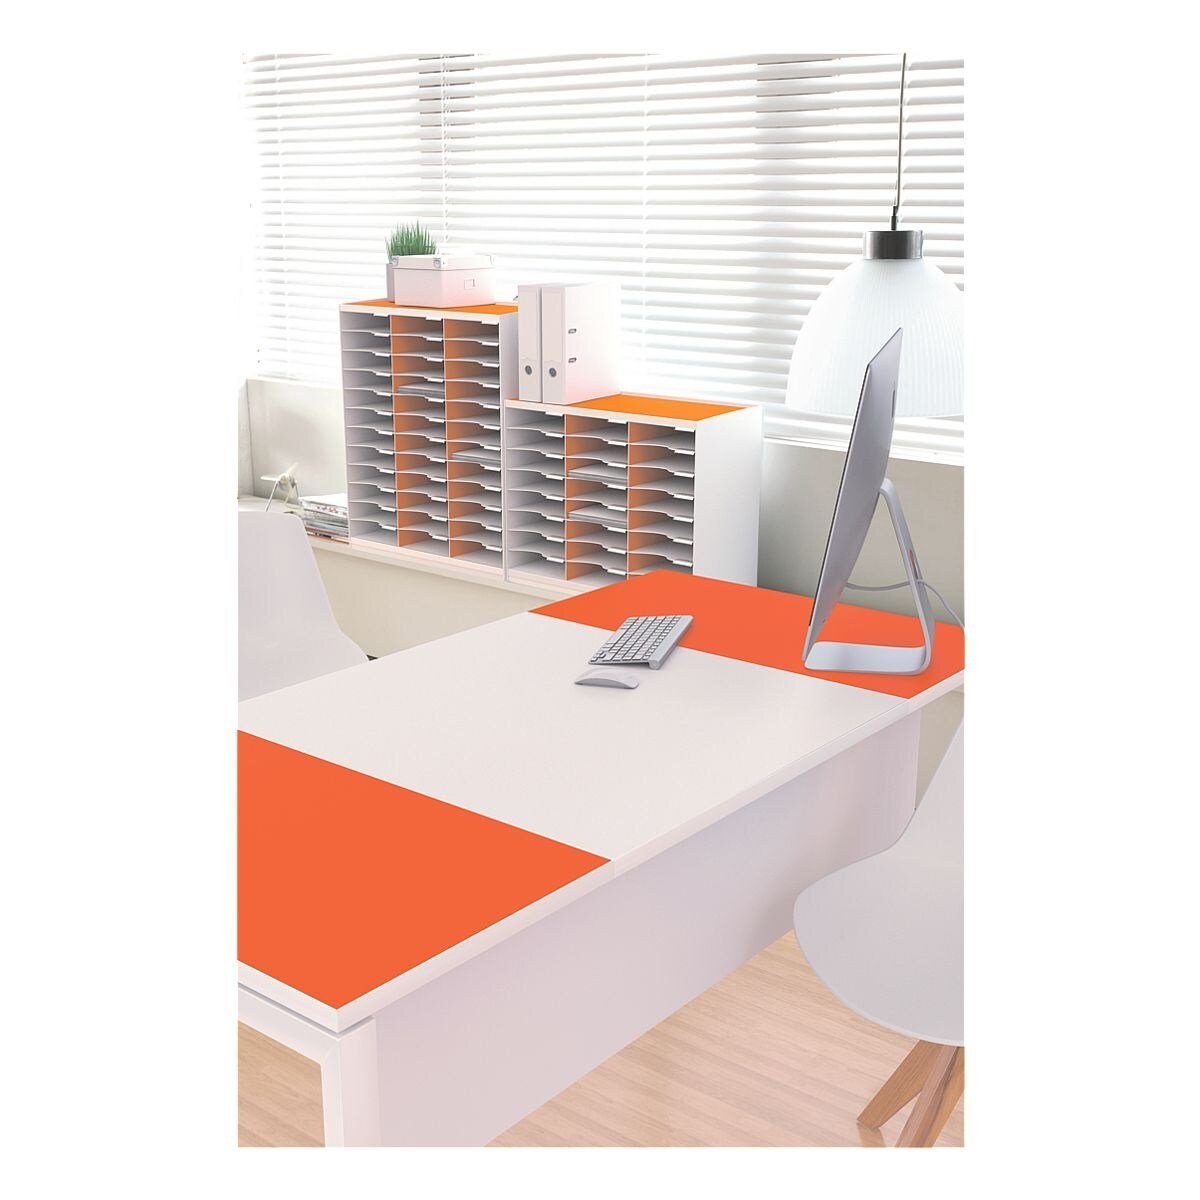 EASYOFFICE Schreibtisch easyOffice, farbigen ABS-Kanten mit Außenflächen und weiß/orange